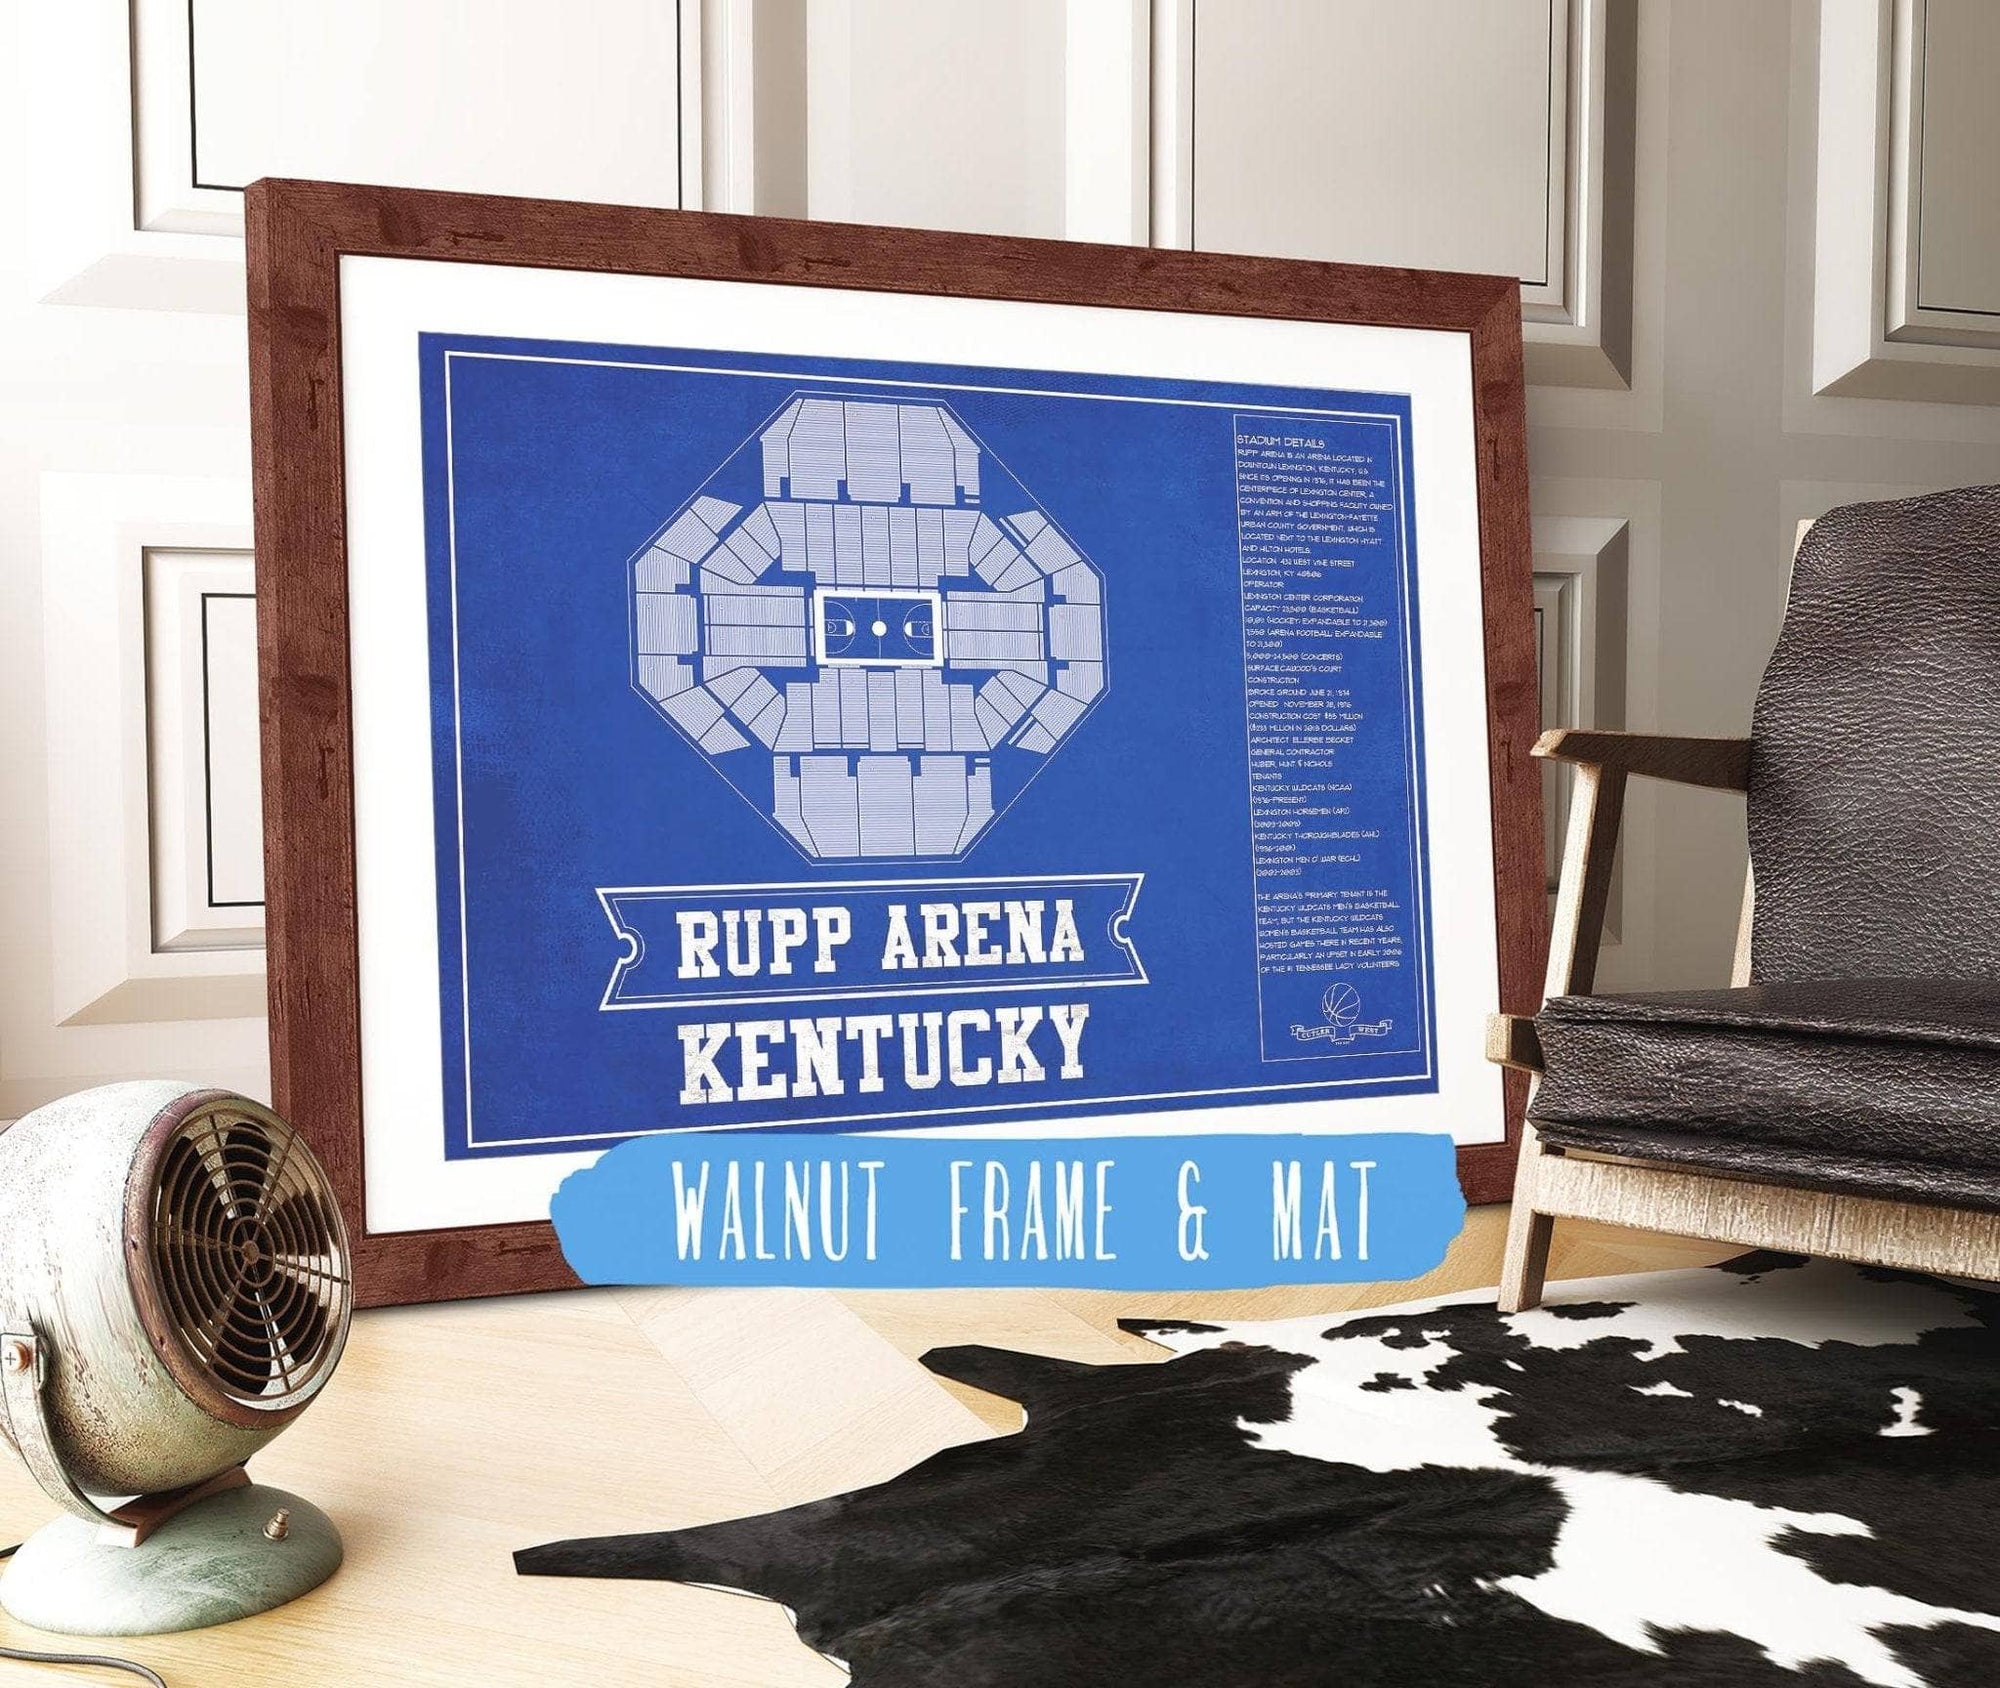 Cutler West Basketball Collection 14" x 11" / Walnut Frame & Mat Kentucky Wildcats - Rupp Arena Seating Chart - College Basketball Blueprint Team Color Art 662071190-TEAM83826